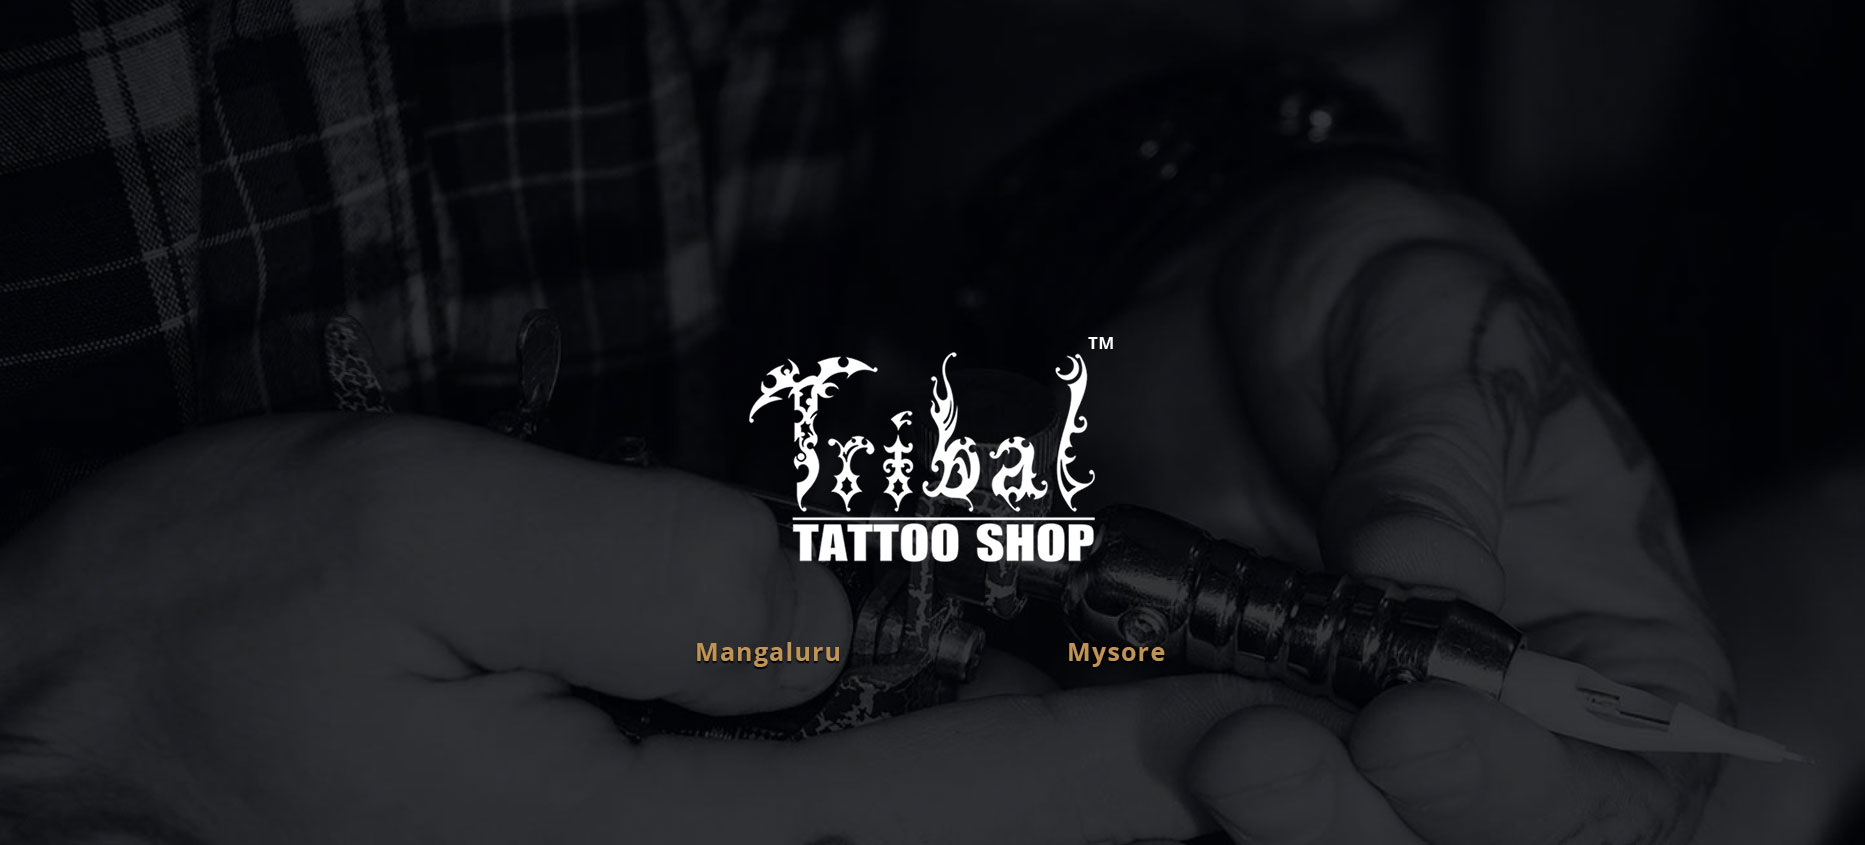 Tribal Tattoo Shop – Tribal Tattoo Shop, Mangalore, Mysore – Tattoos  Artists – tattoos – tattooz – tattoo parlors – best tattoos – permanent  tattoos – tattooing